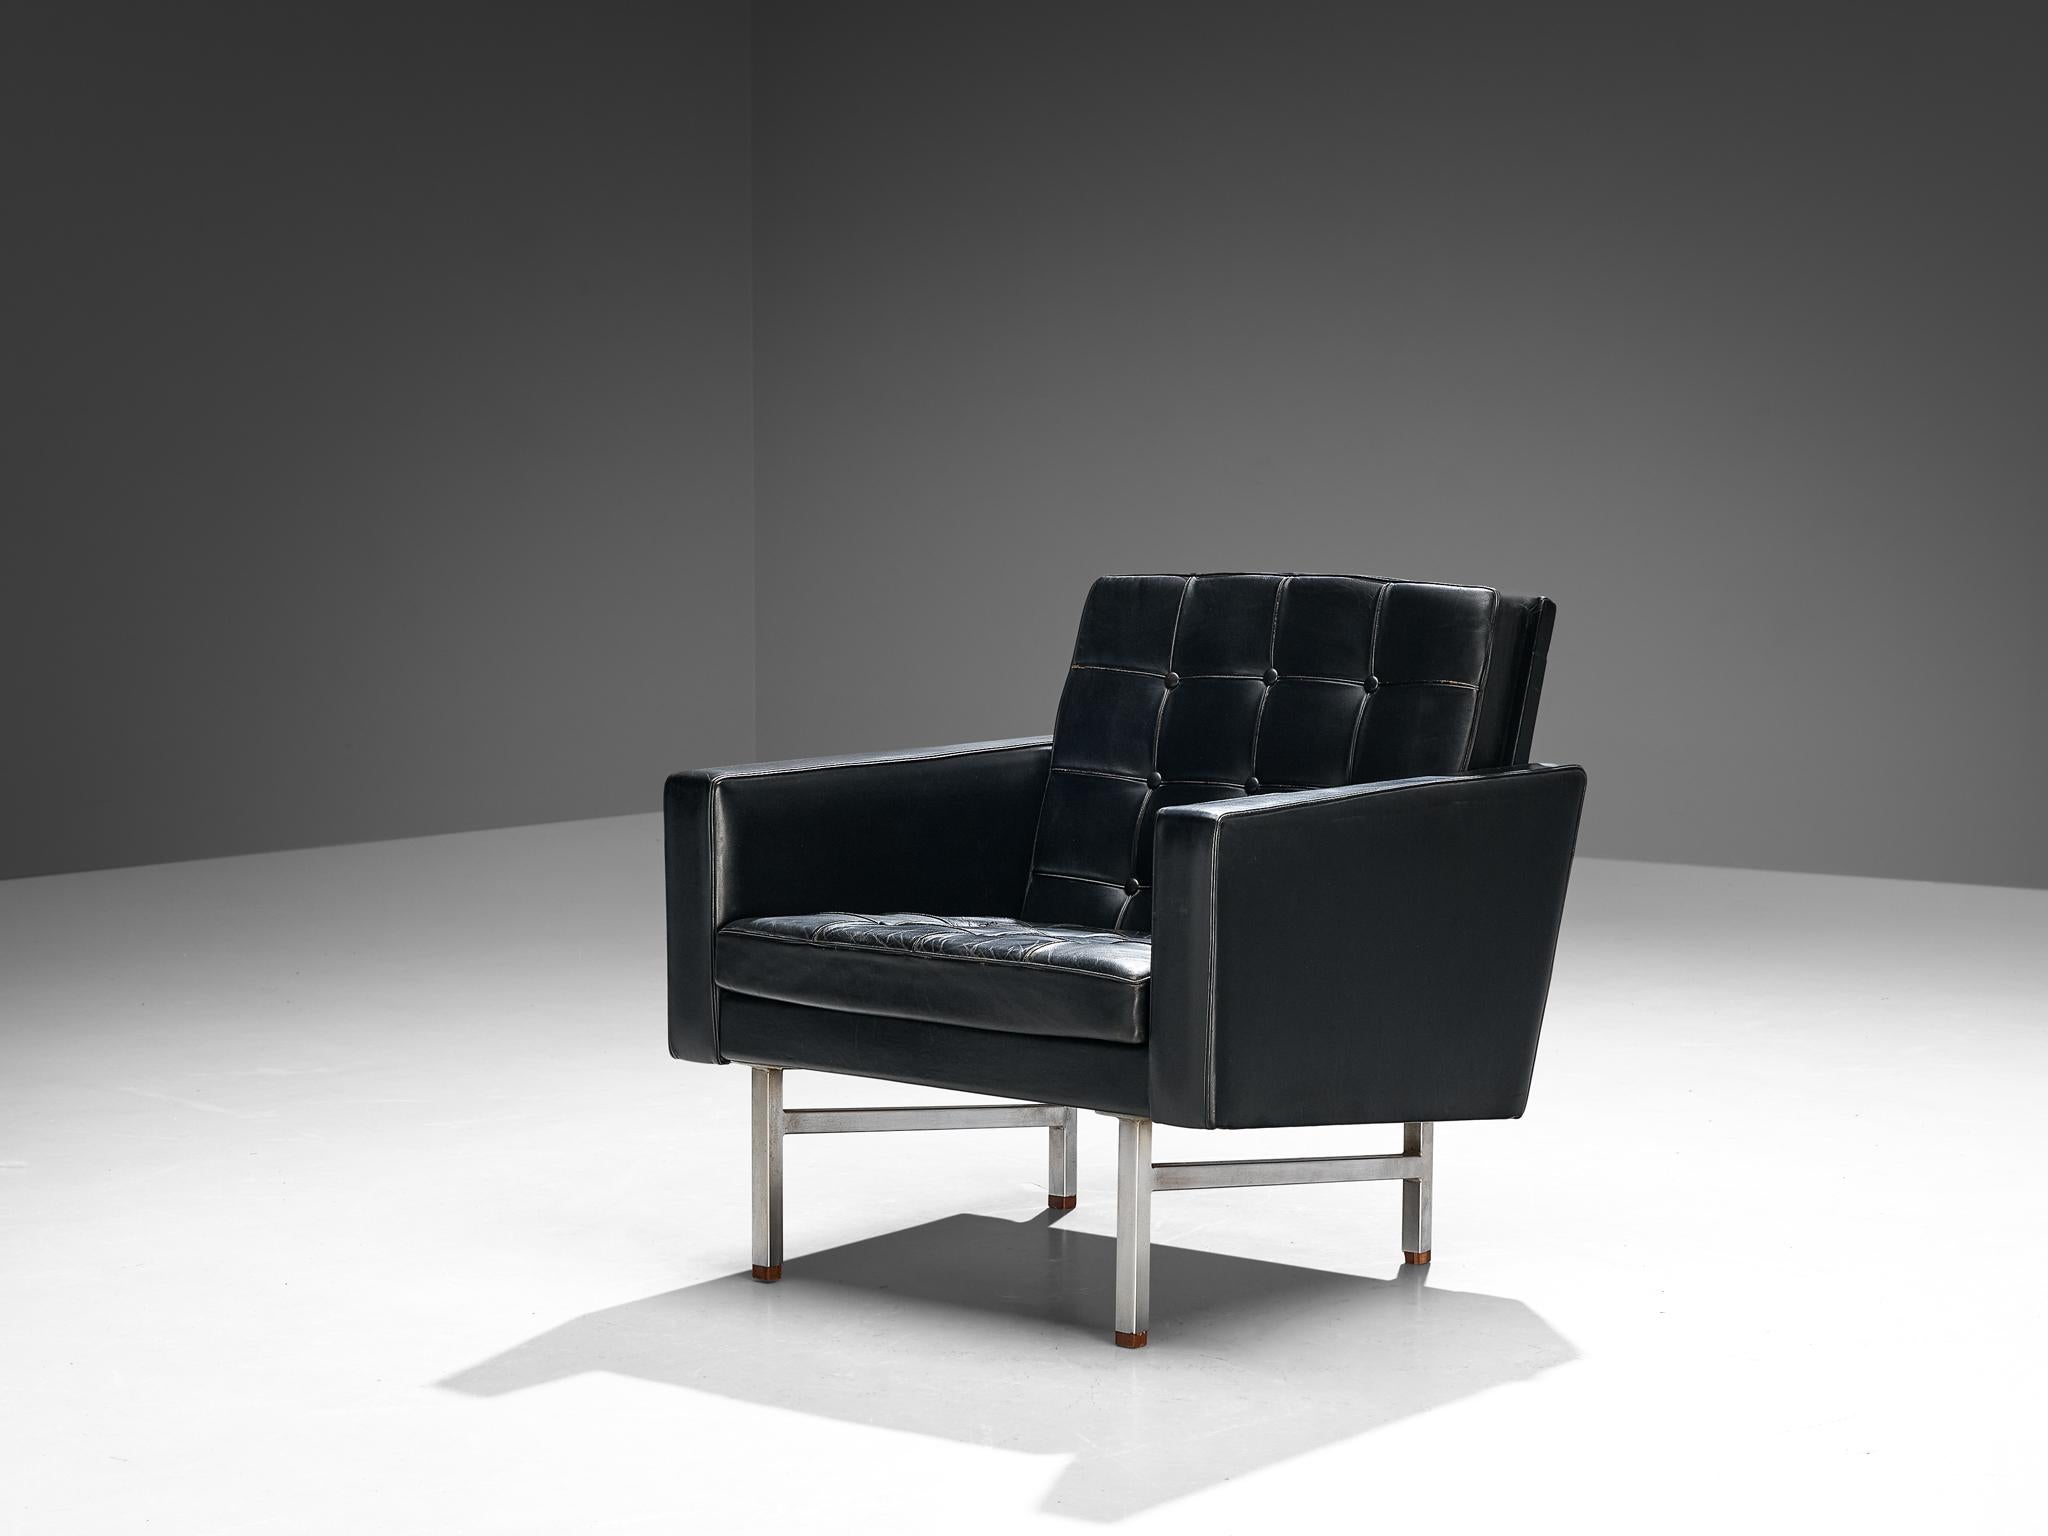 Karl Erik Ekselius, Loungesessel, Leder, verchromter Stahl, Nussbaum, Schweden, 1960er Jahre.

Dieser Sessel ist in schwarzem Originalleder ausgeführt. Die getuftete Sitzfläche und Rückenlehne in Kombination mit dem klaren und geraden Korpus und dem